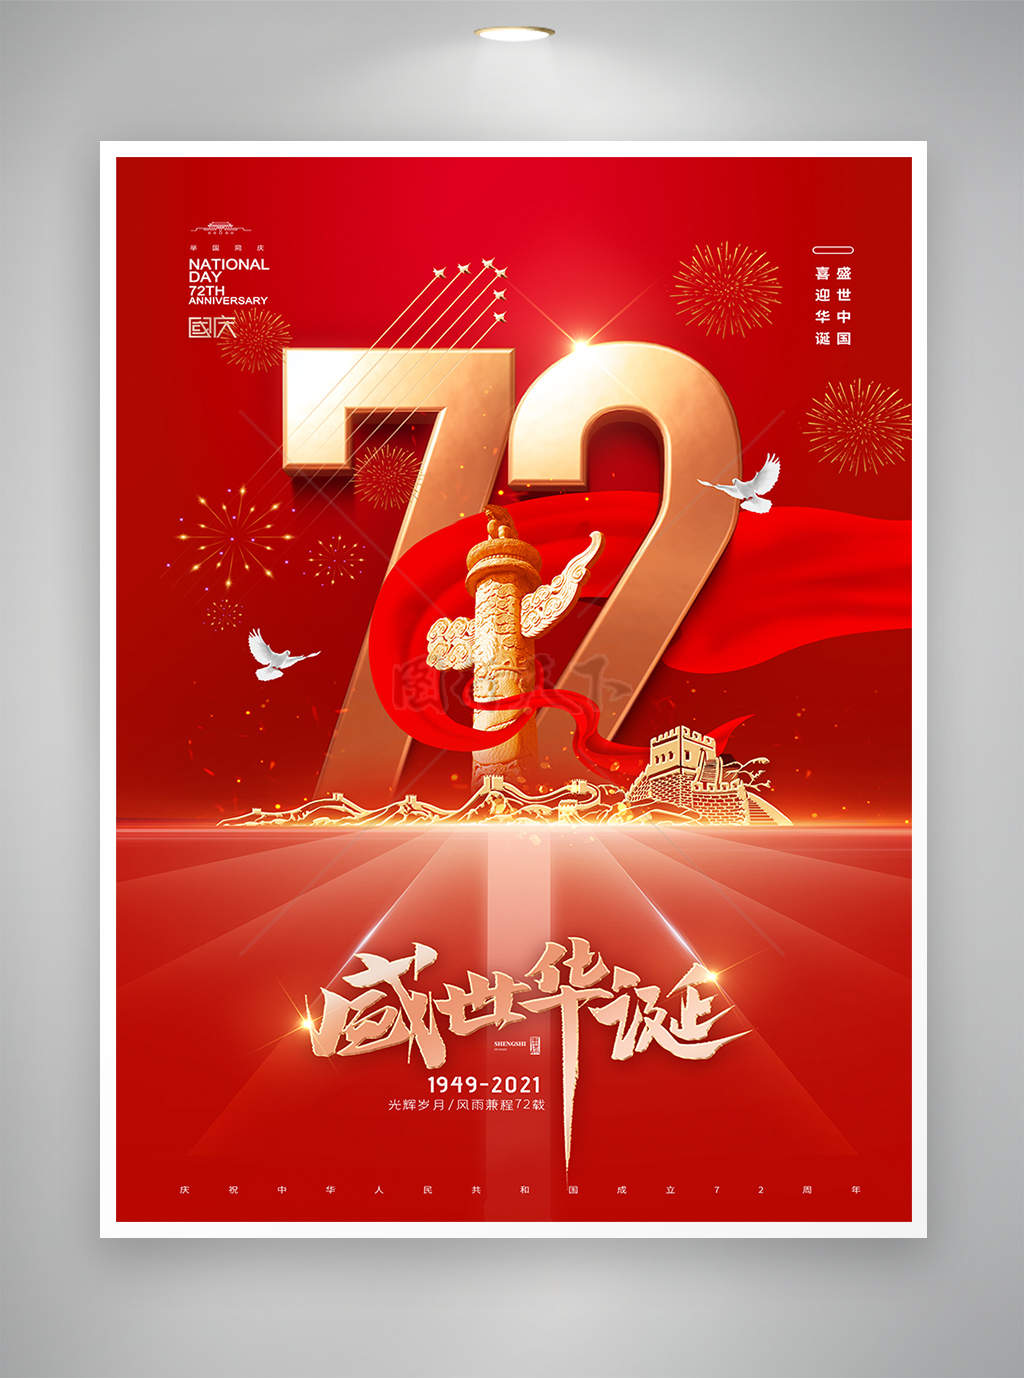 盛世中国喜迎华诞国庆节72周年海报